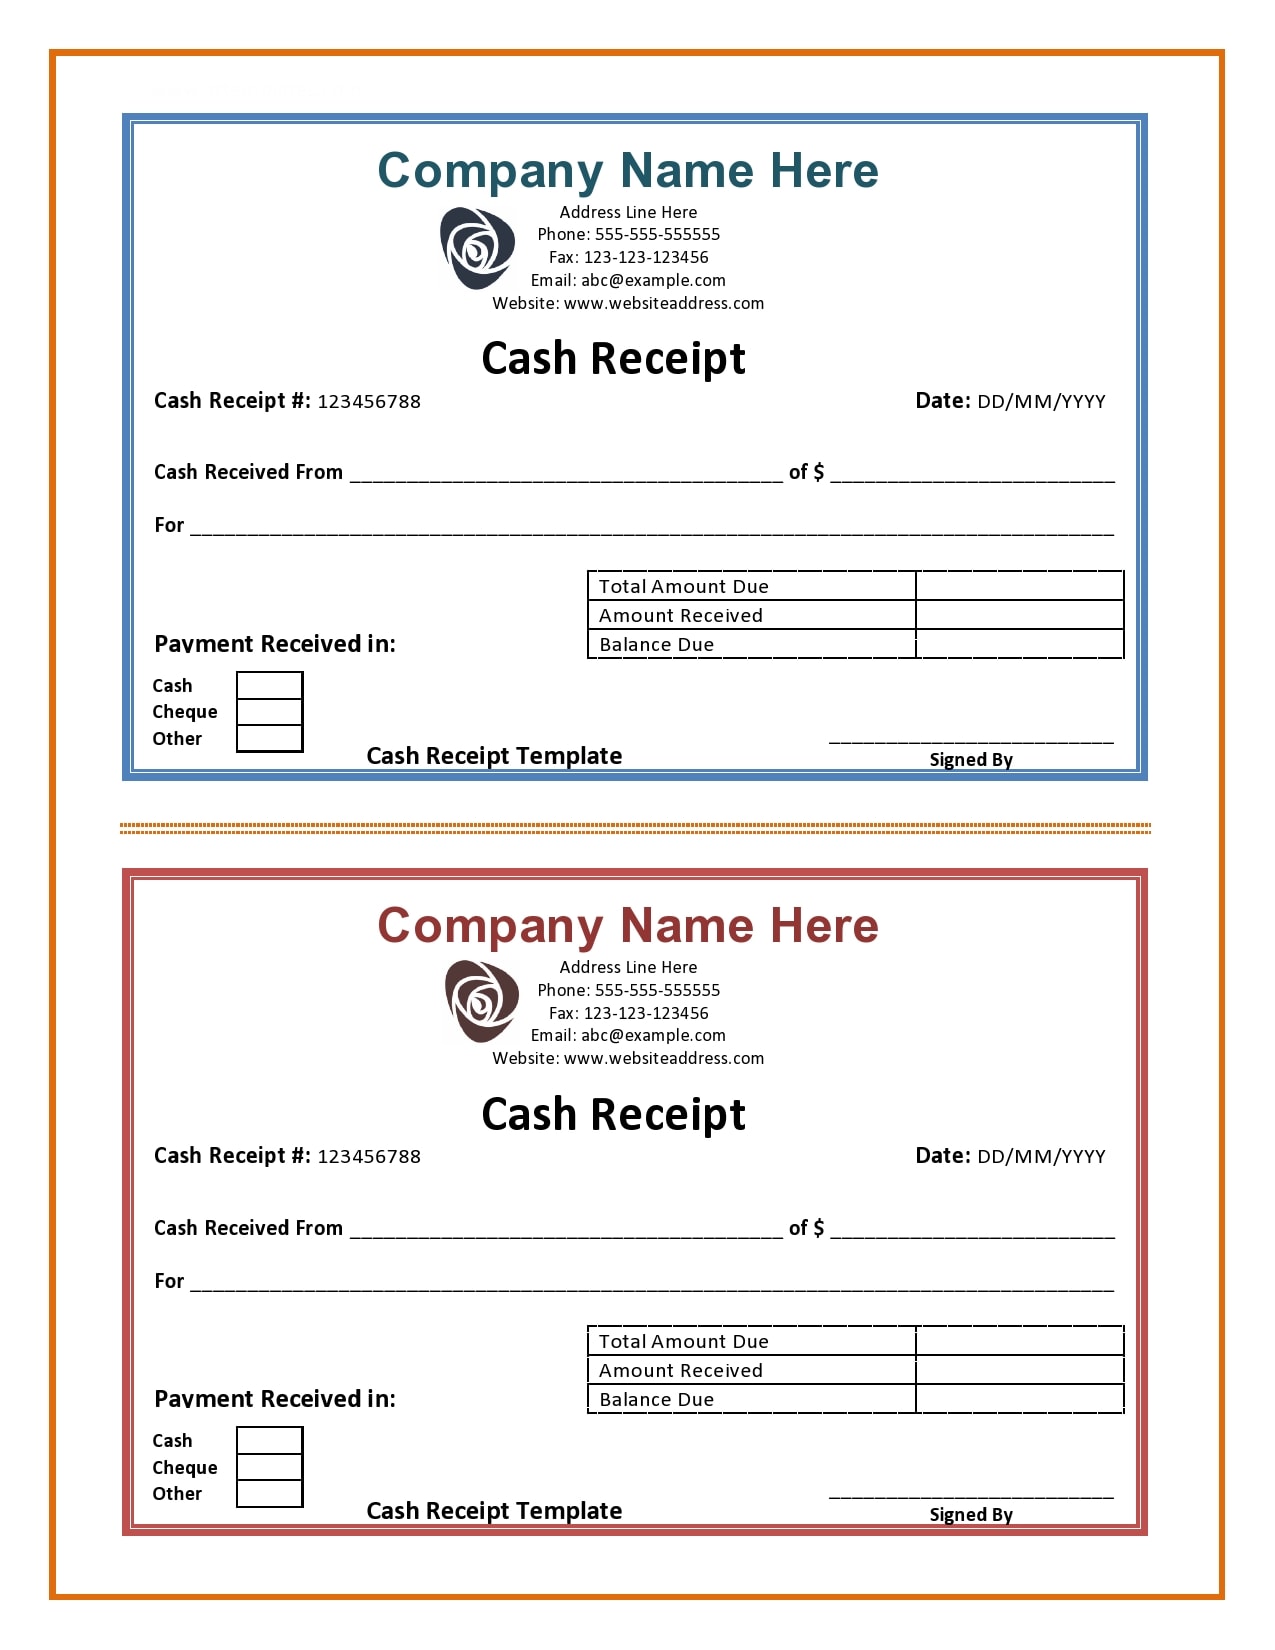 29-fillable-cash-receipt-templates-forms-templatearchive